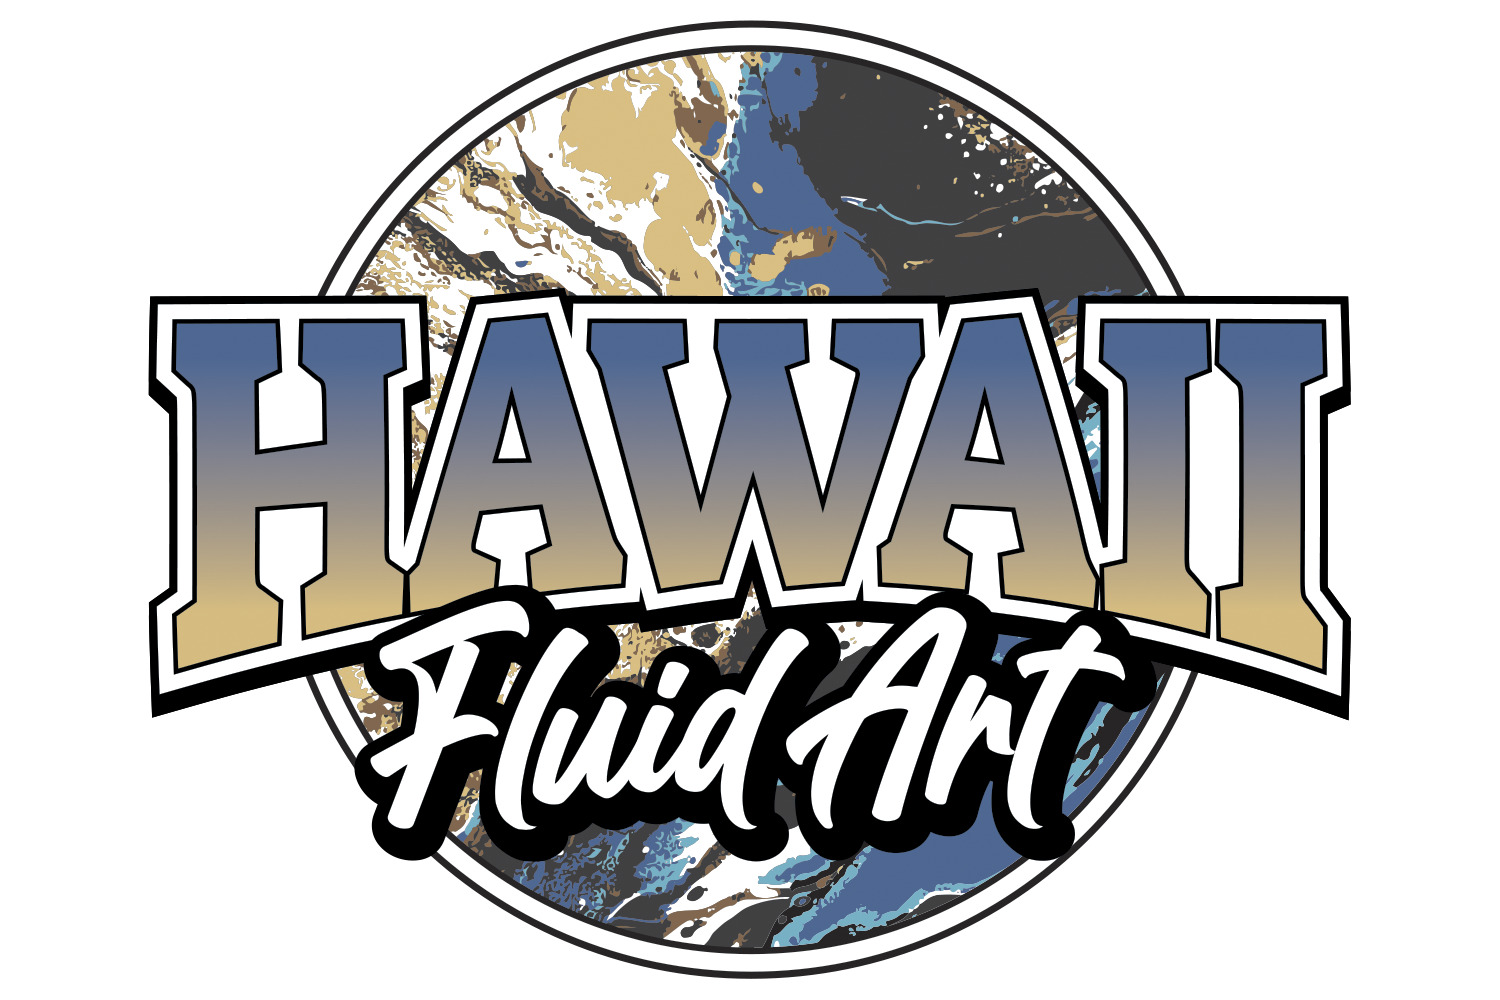 Hawaii Fluid Art logo